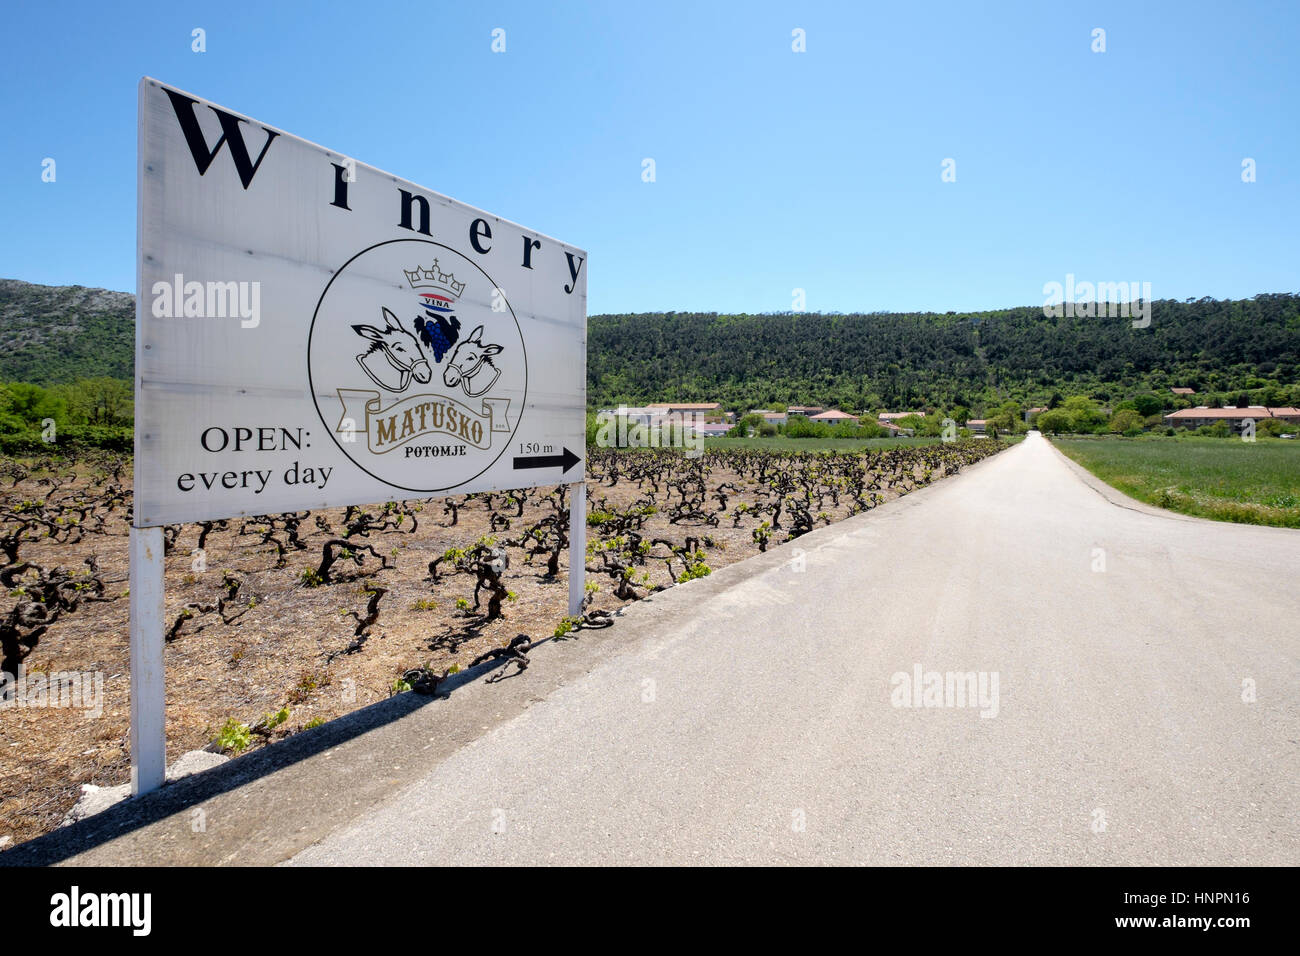 Matusko winery sign at the side of the road, Peljesac peninsula, Dalmatia, Croatia Stock Photo